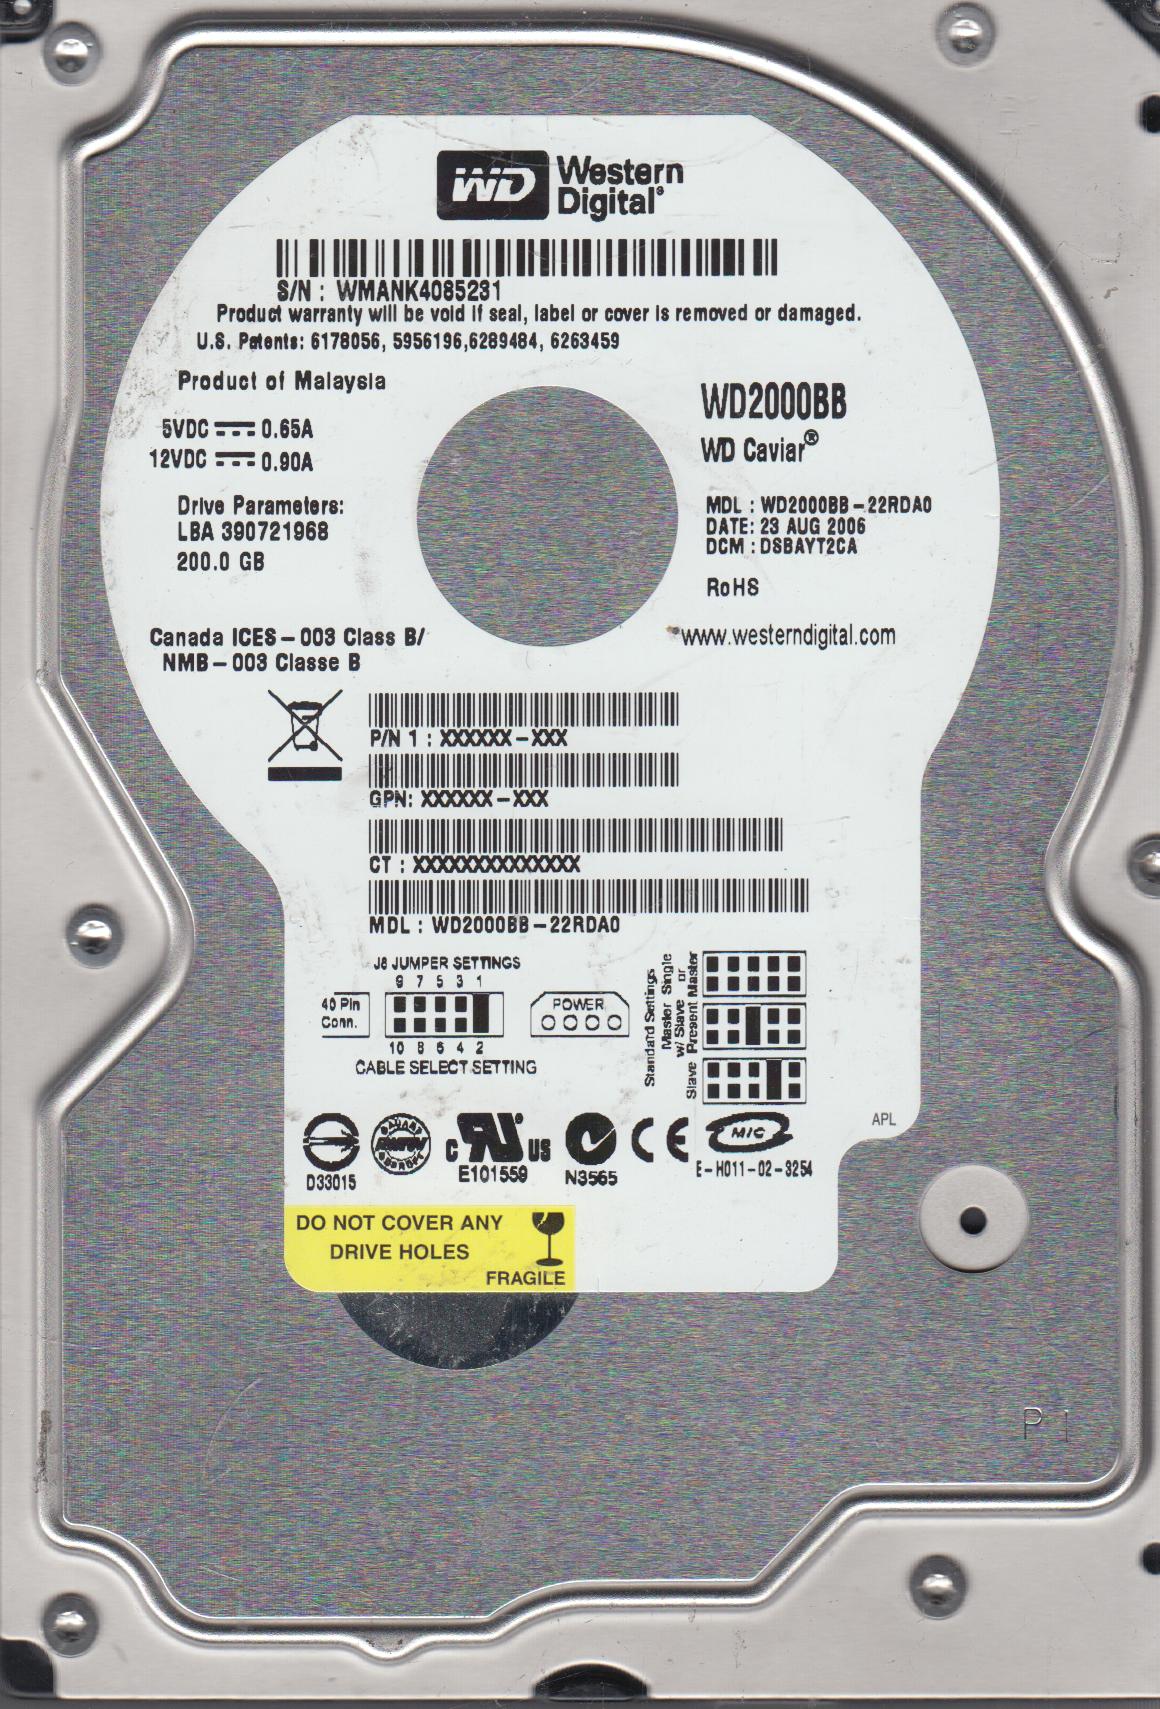 WD2000BB-22RDA0, DCM DSBAYT2CA, Western Digital 200GB IDE 3.5 Hard Drive - image 1 of 1